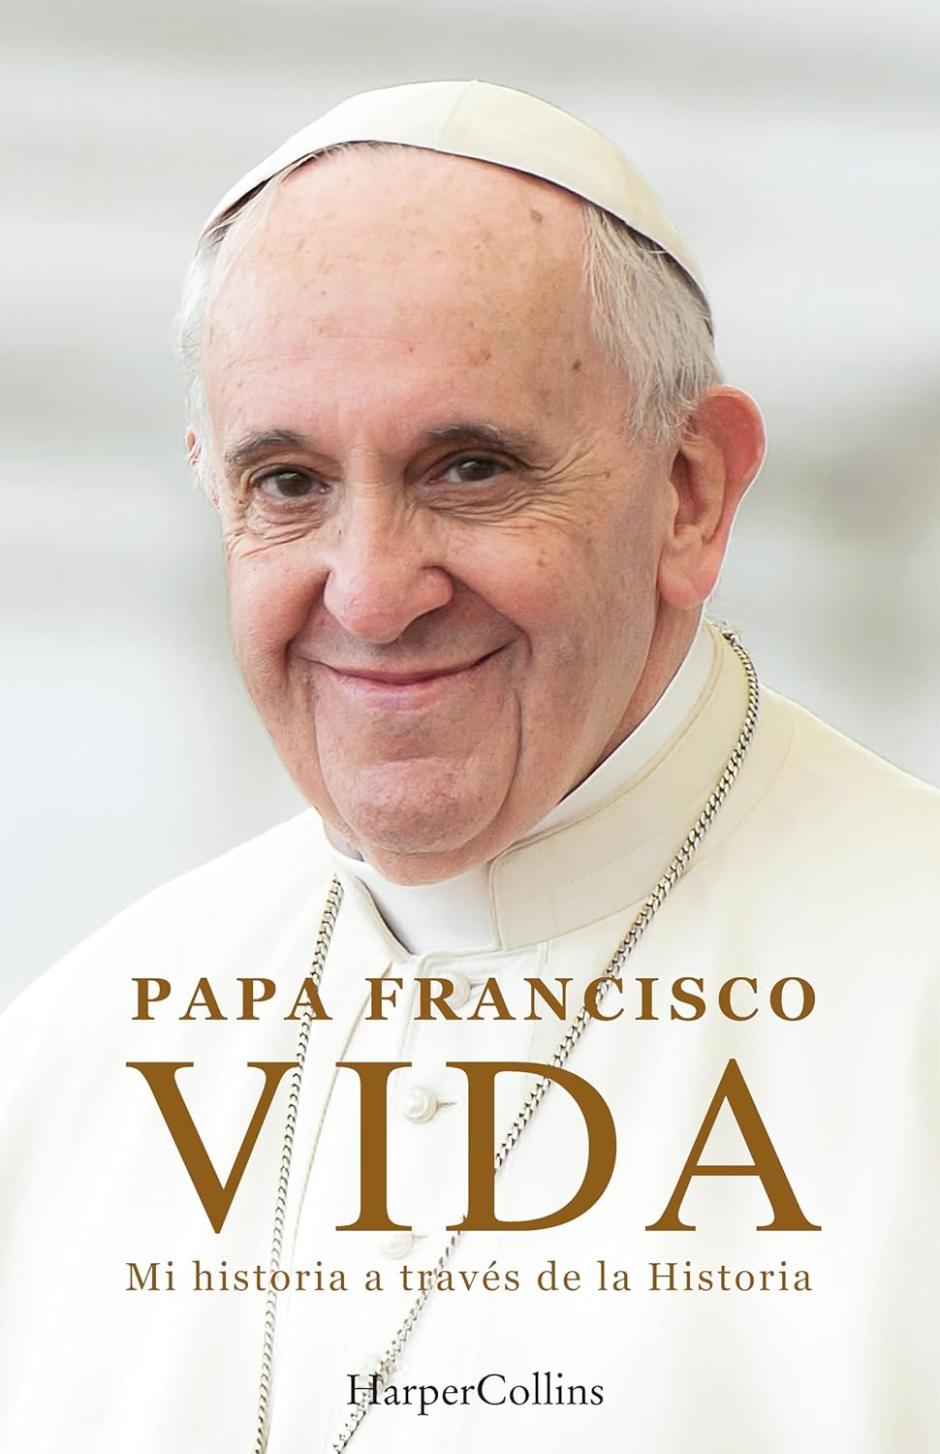 Portada de la autobiografía del Papa Francisco